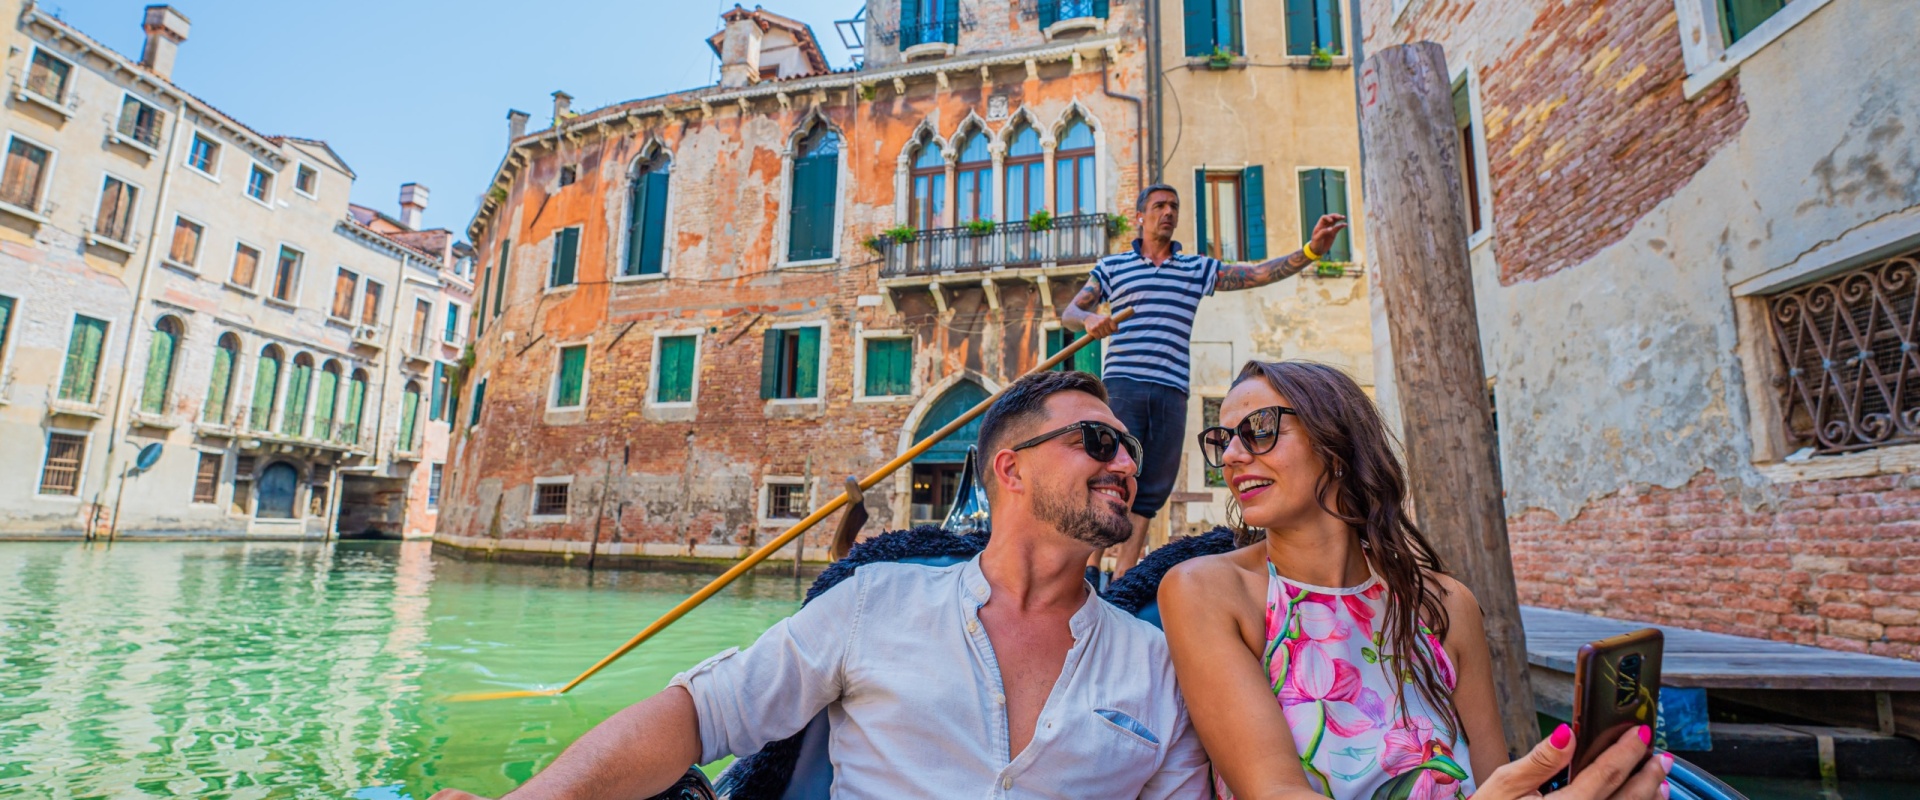 Gondola ride in Venice | Adriatic Lines by Kompas